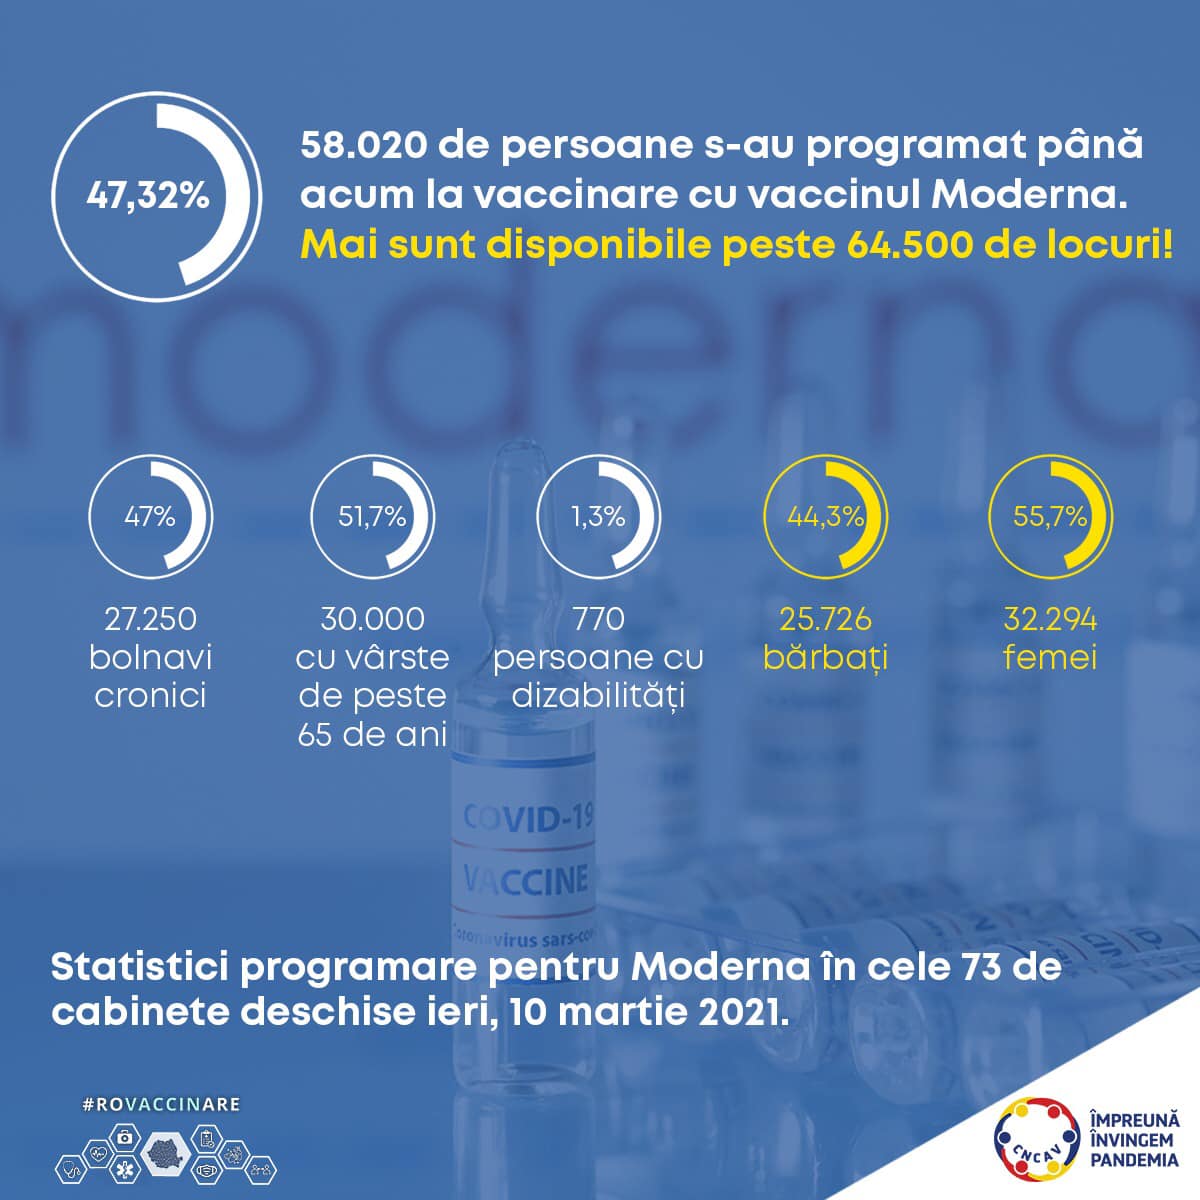 Aproape 60.000 de români s-au programat pentru vaccinul Moderna în ultimele 24 de ore